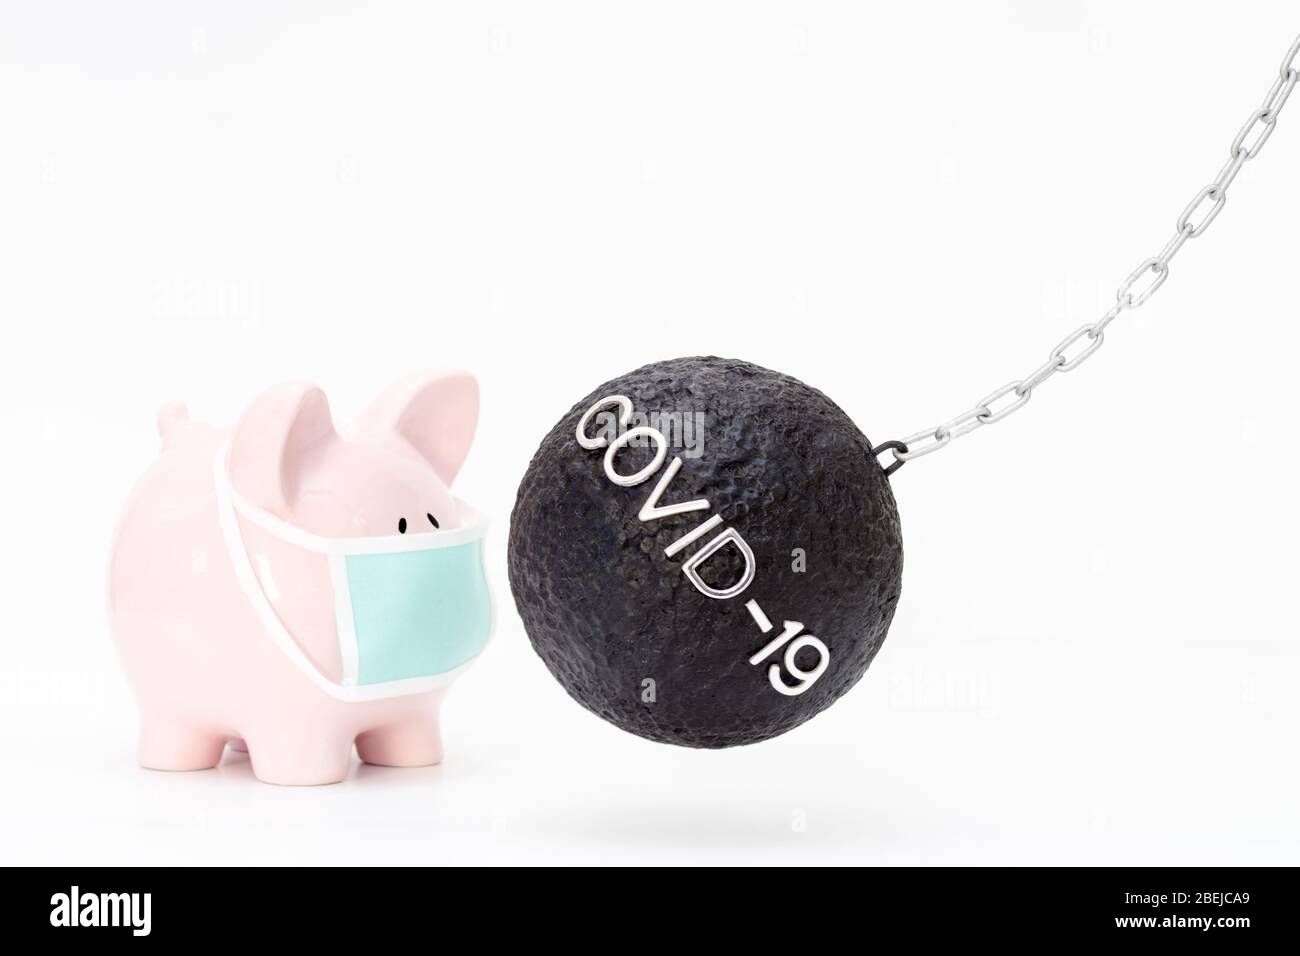 Image conceptuelle pour la gestion des risques avec une boule de naufrage et une banque de porc illustrant l'impact financier de COVID-19 sur l'épargne et la santé. Banque D'Images